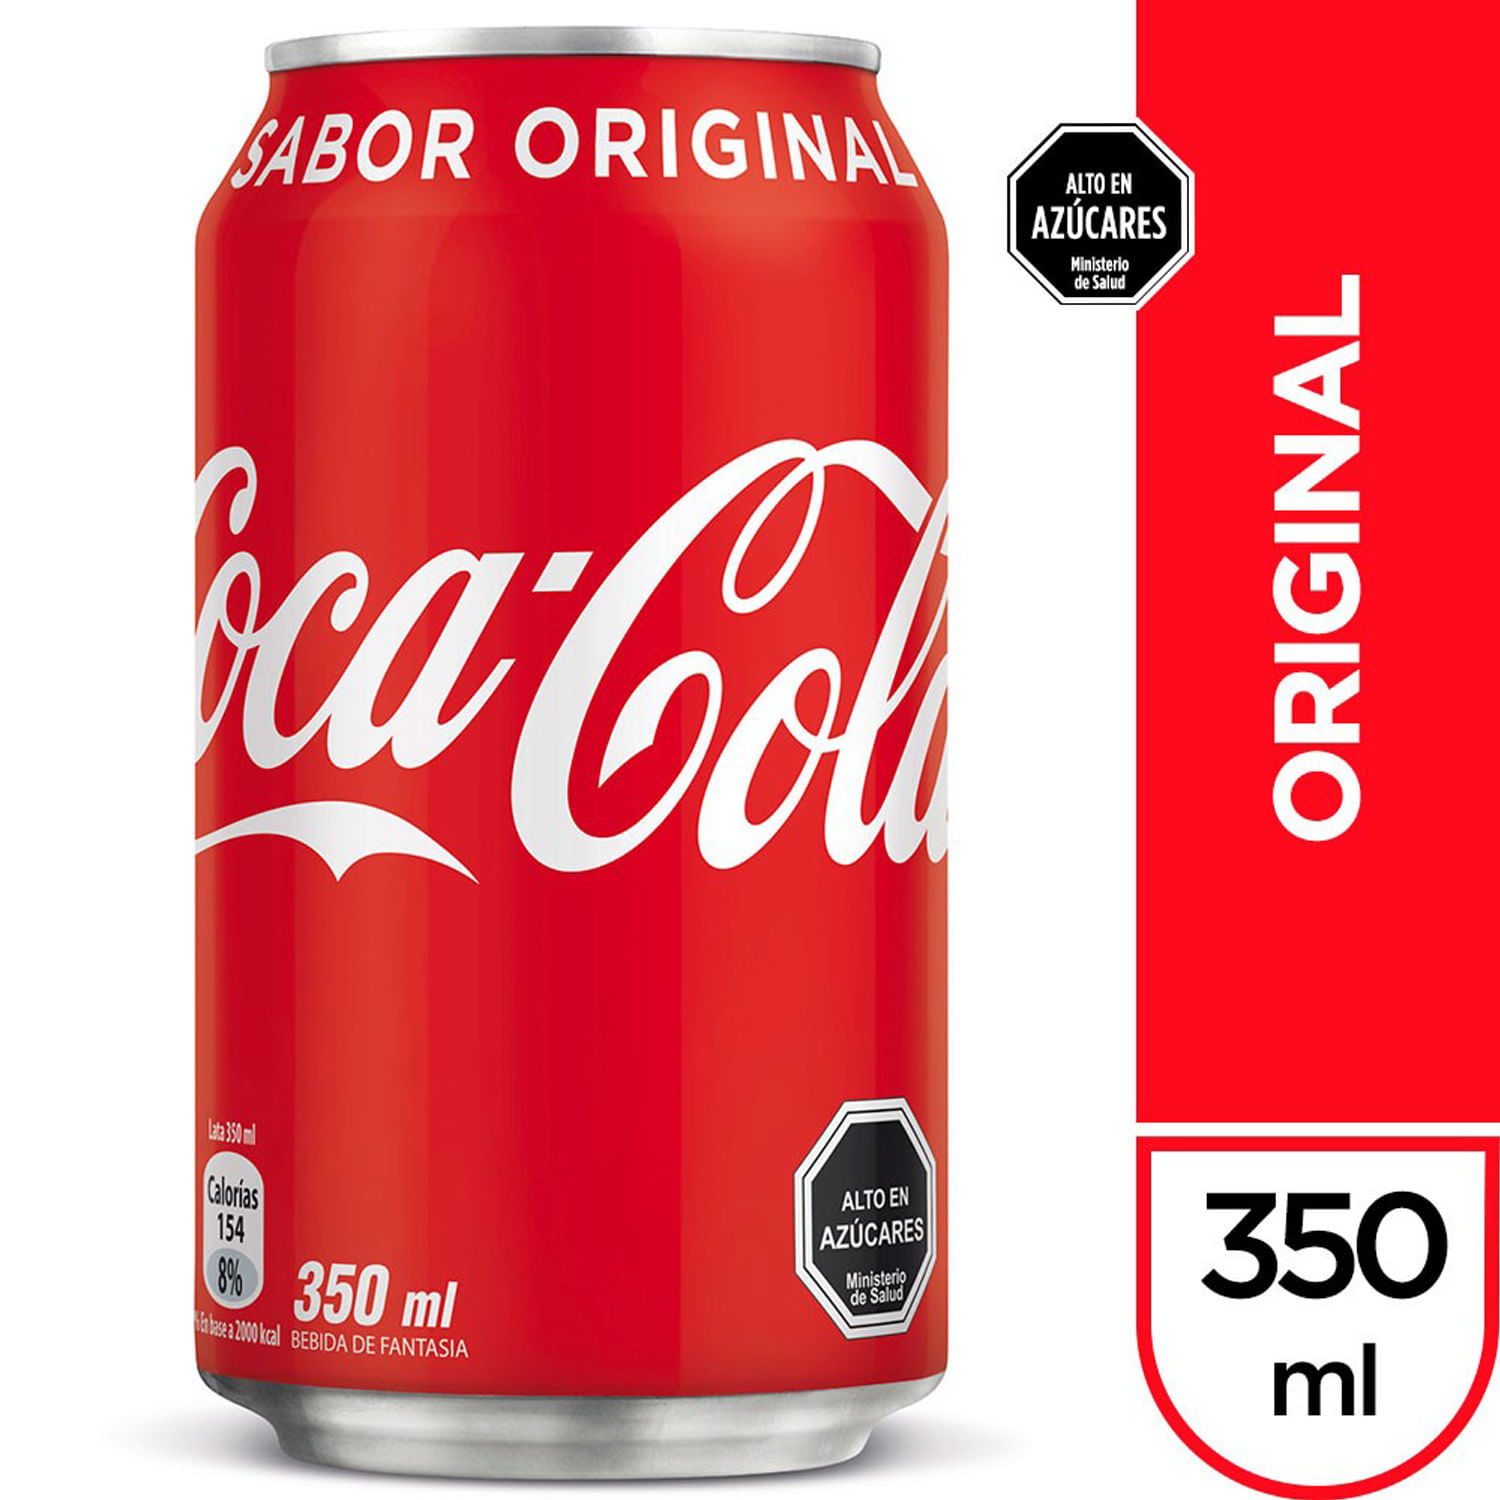  Coca-Cola - Latas de Coca Cola : Comida Gourmet y Alimentos